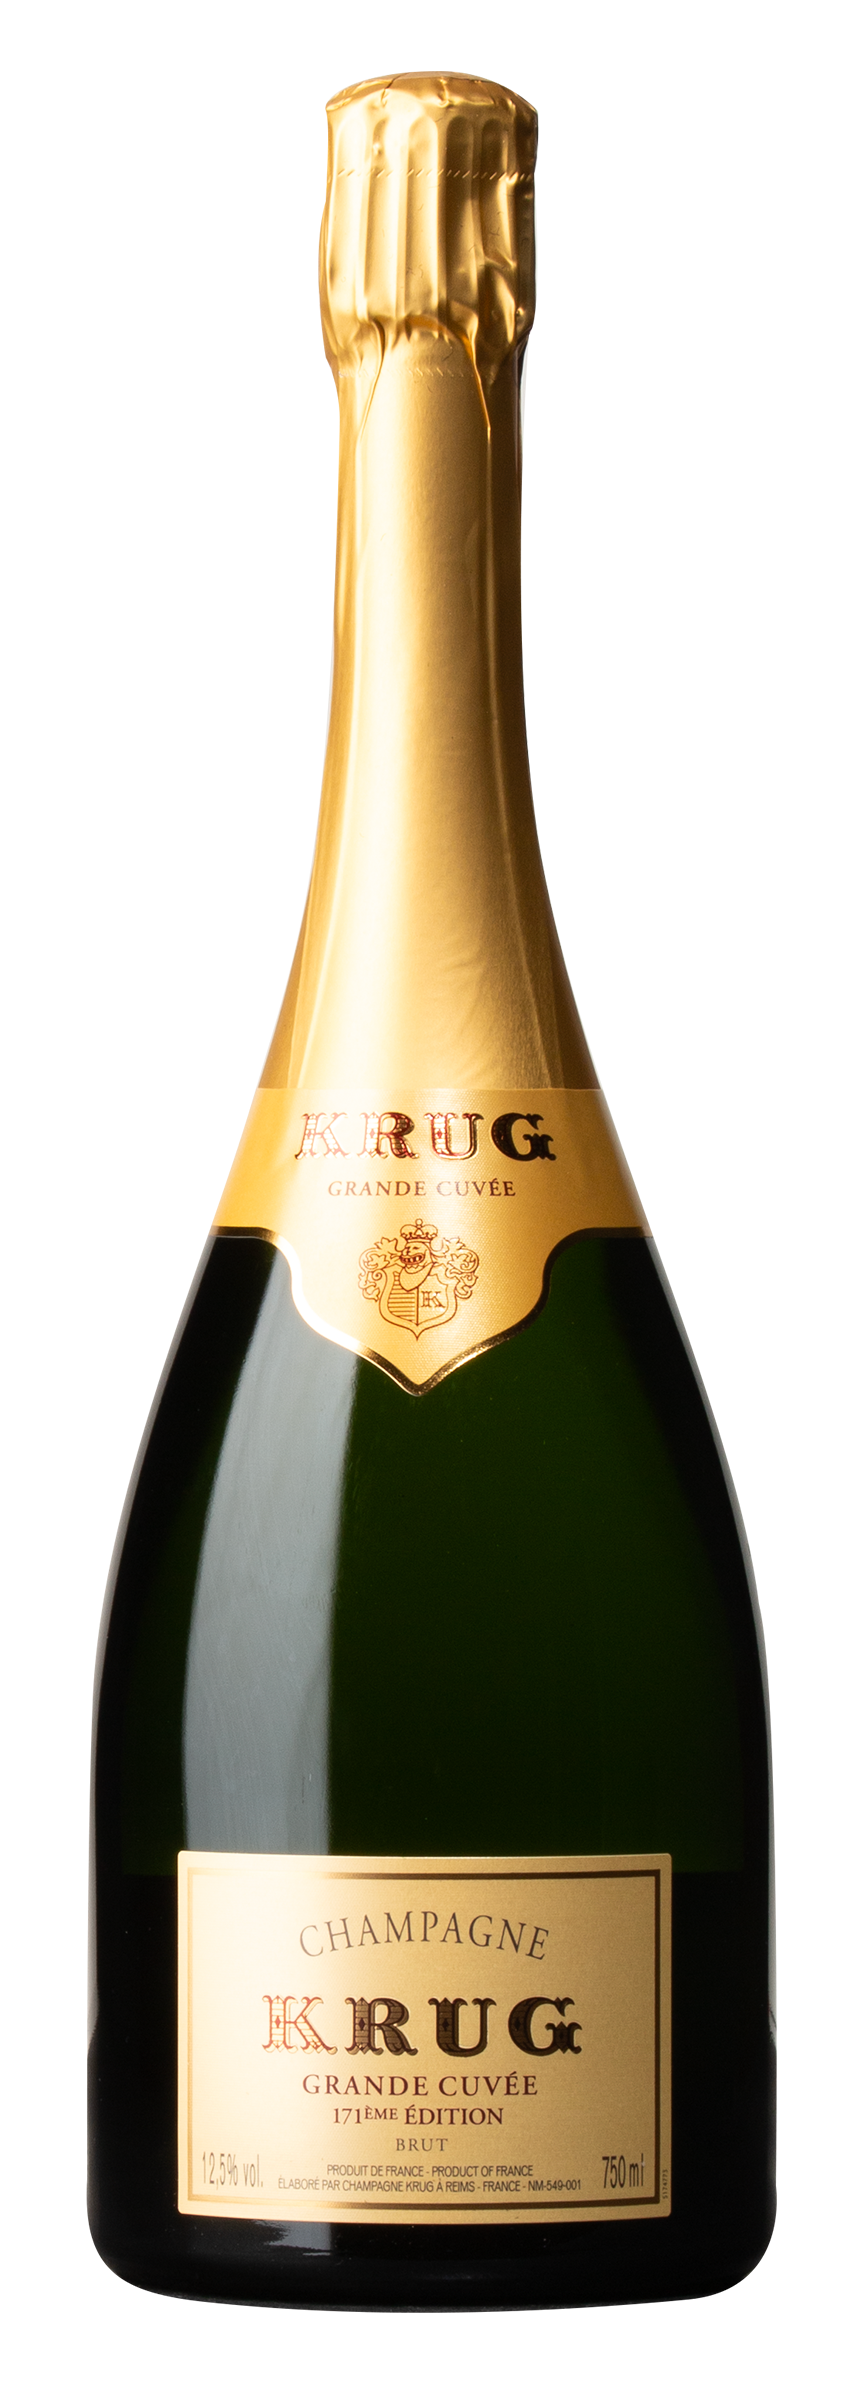 Champagne Krug Grande Cuvée Brut 171ème Edition